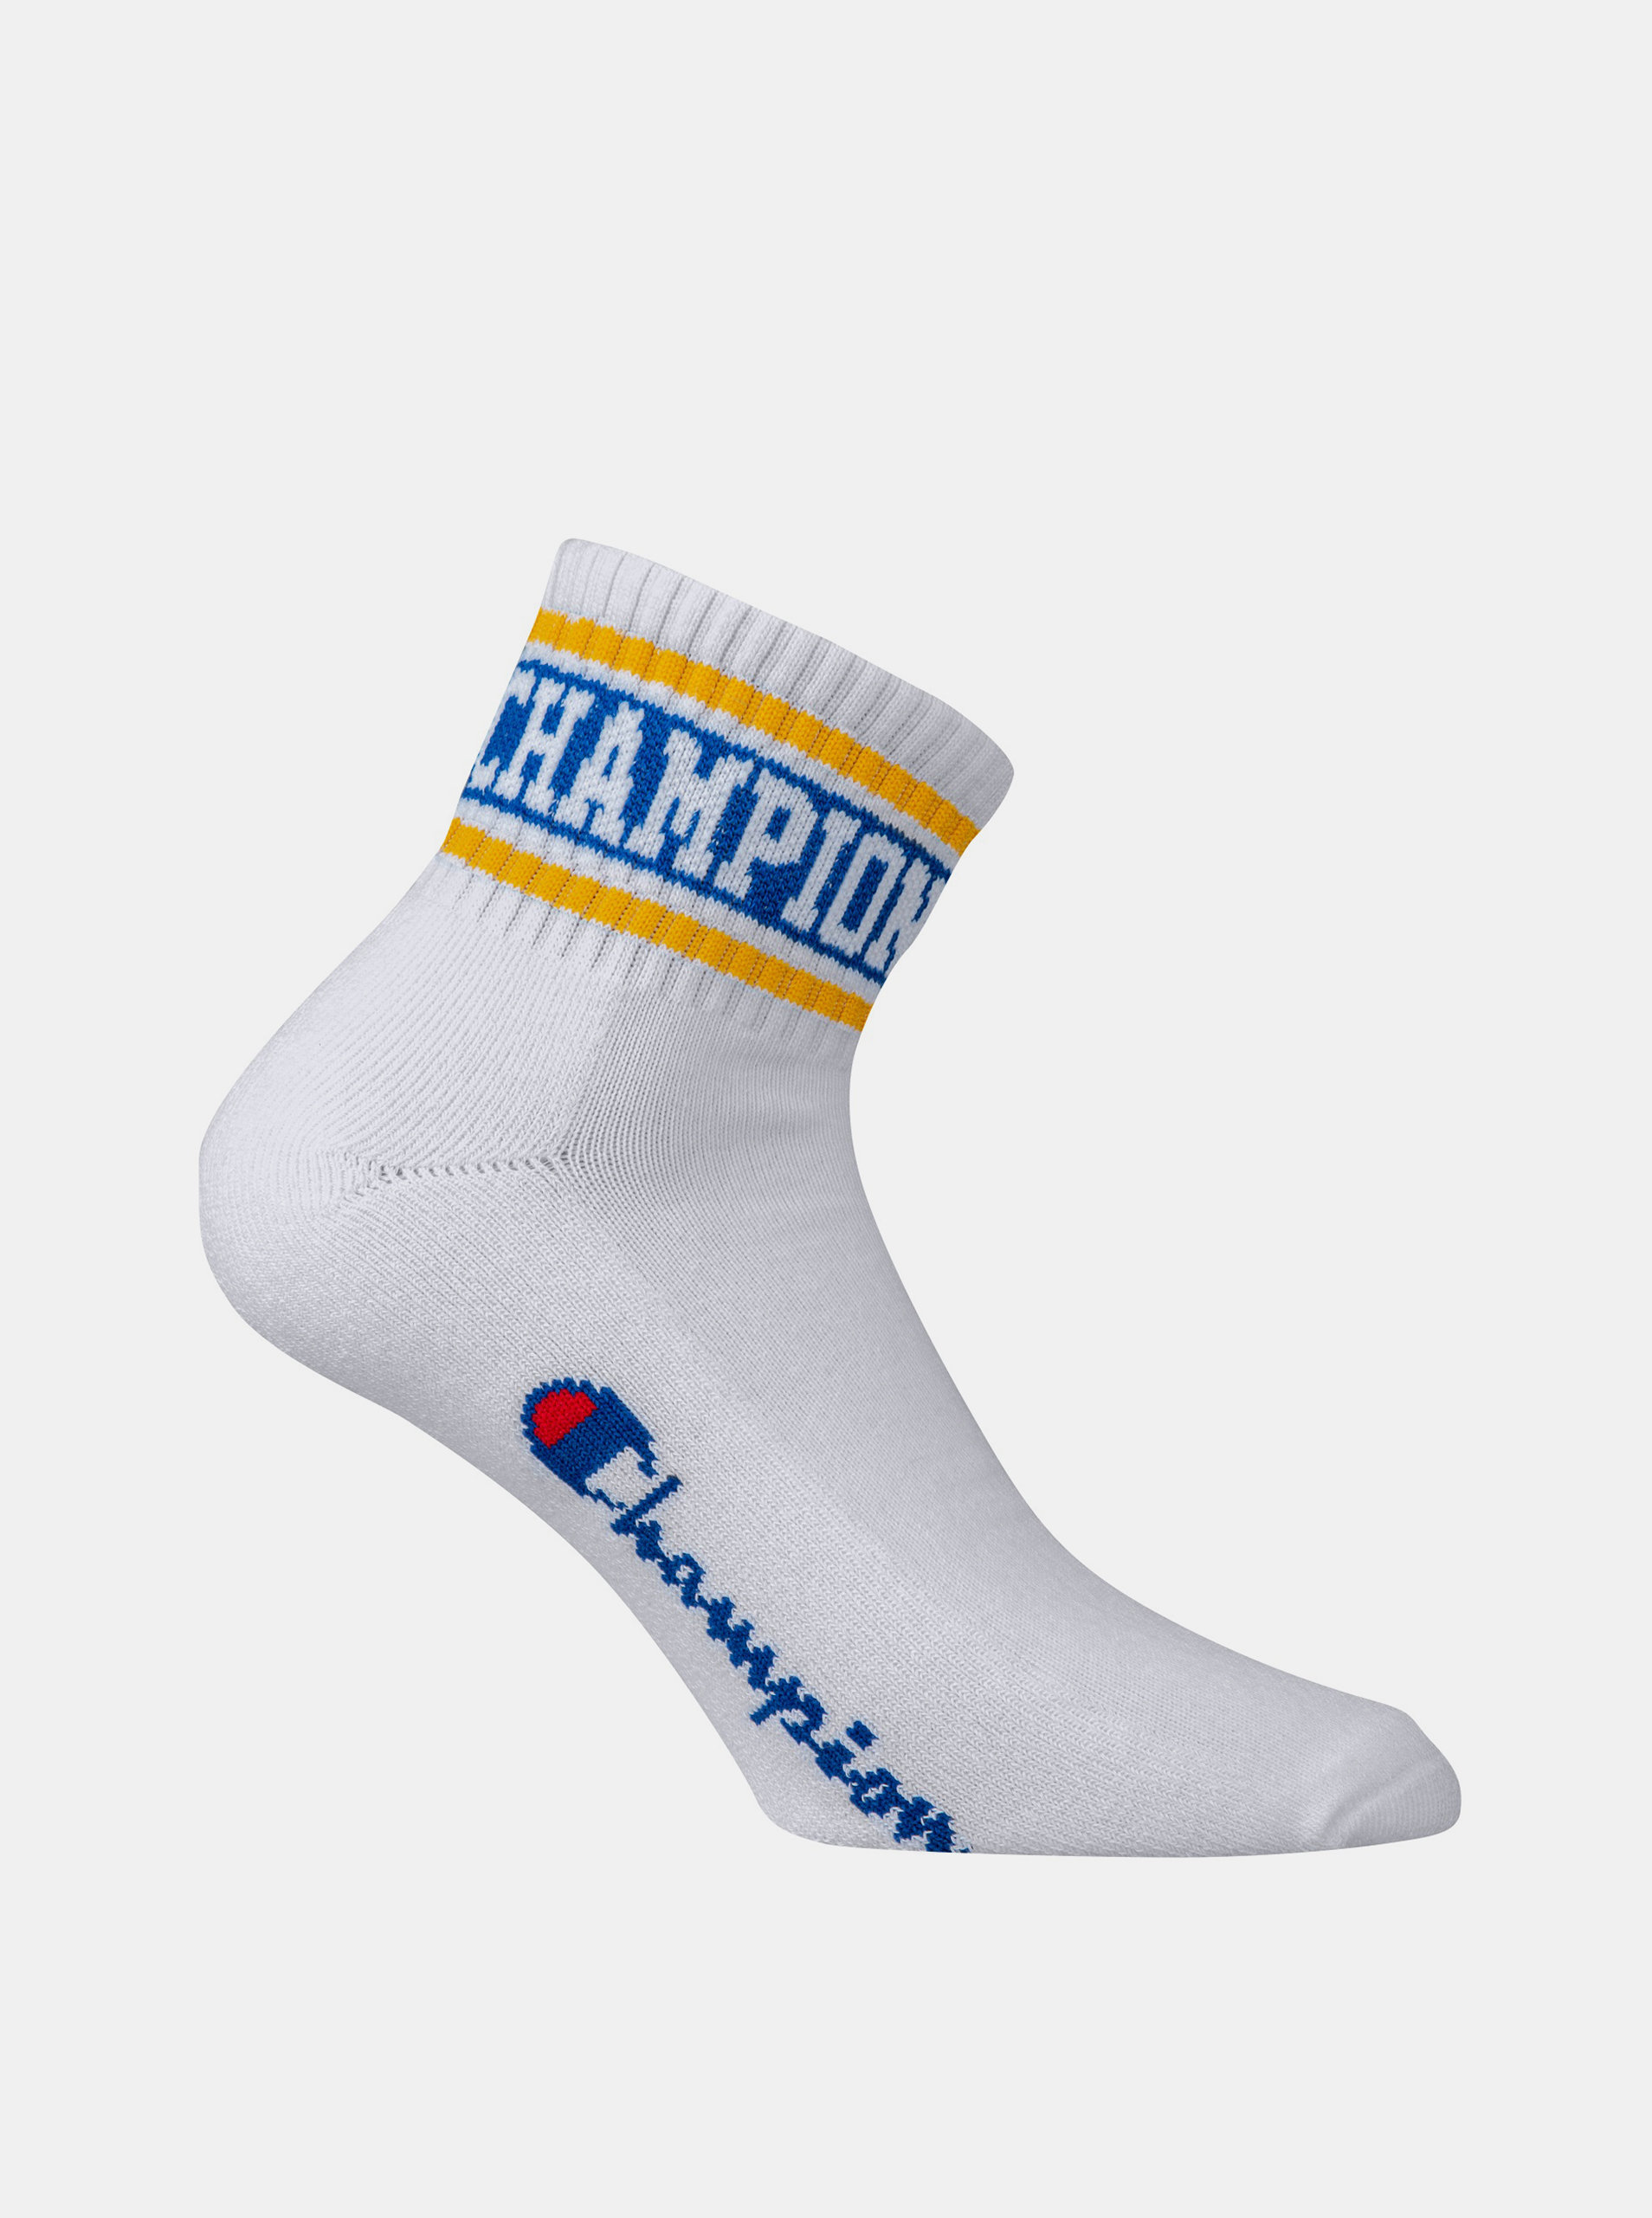 Fotografie CHAMPION ANKLE ROCHESTER OLD SCHOOL - Sportovní kotníkové ponožky 1 pár - bílá - žlutá - modrá